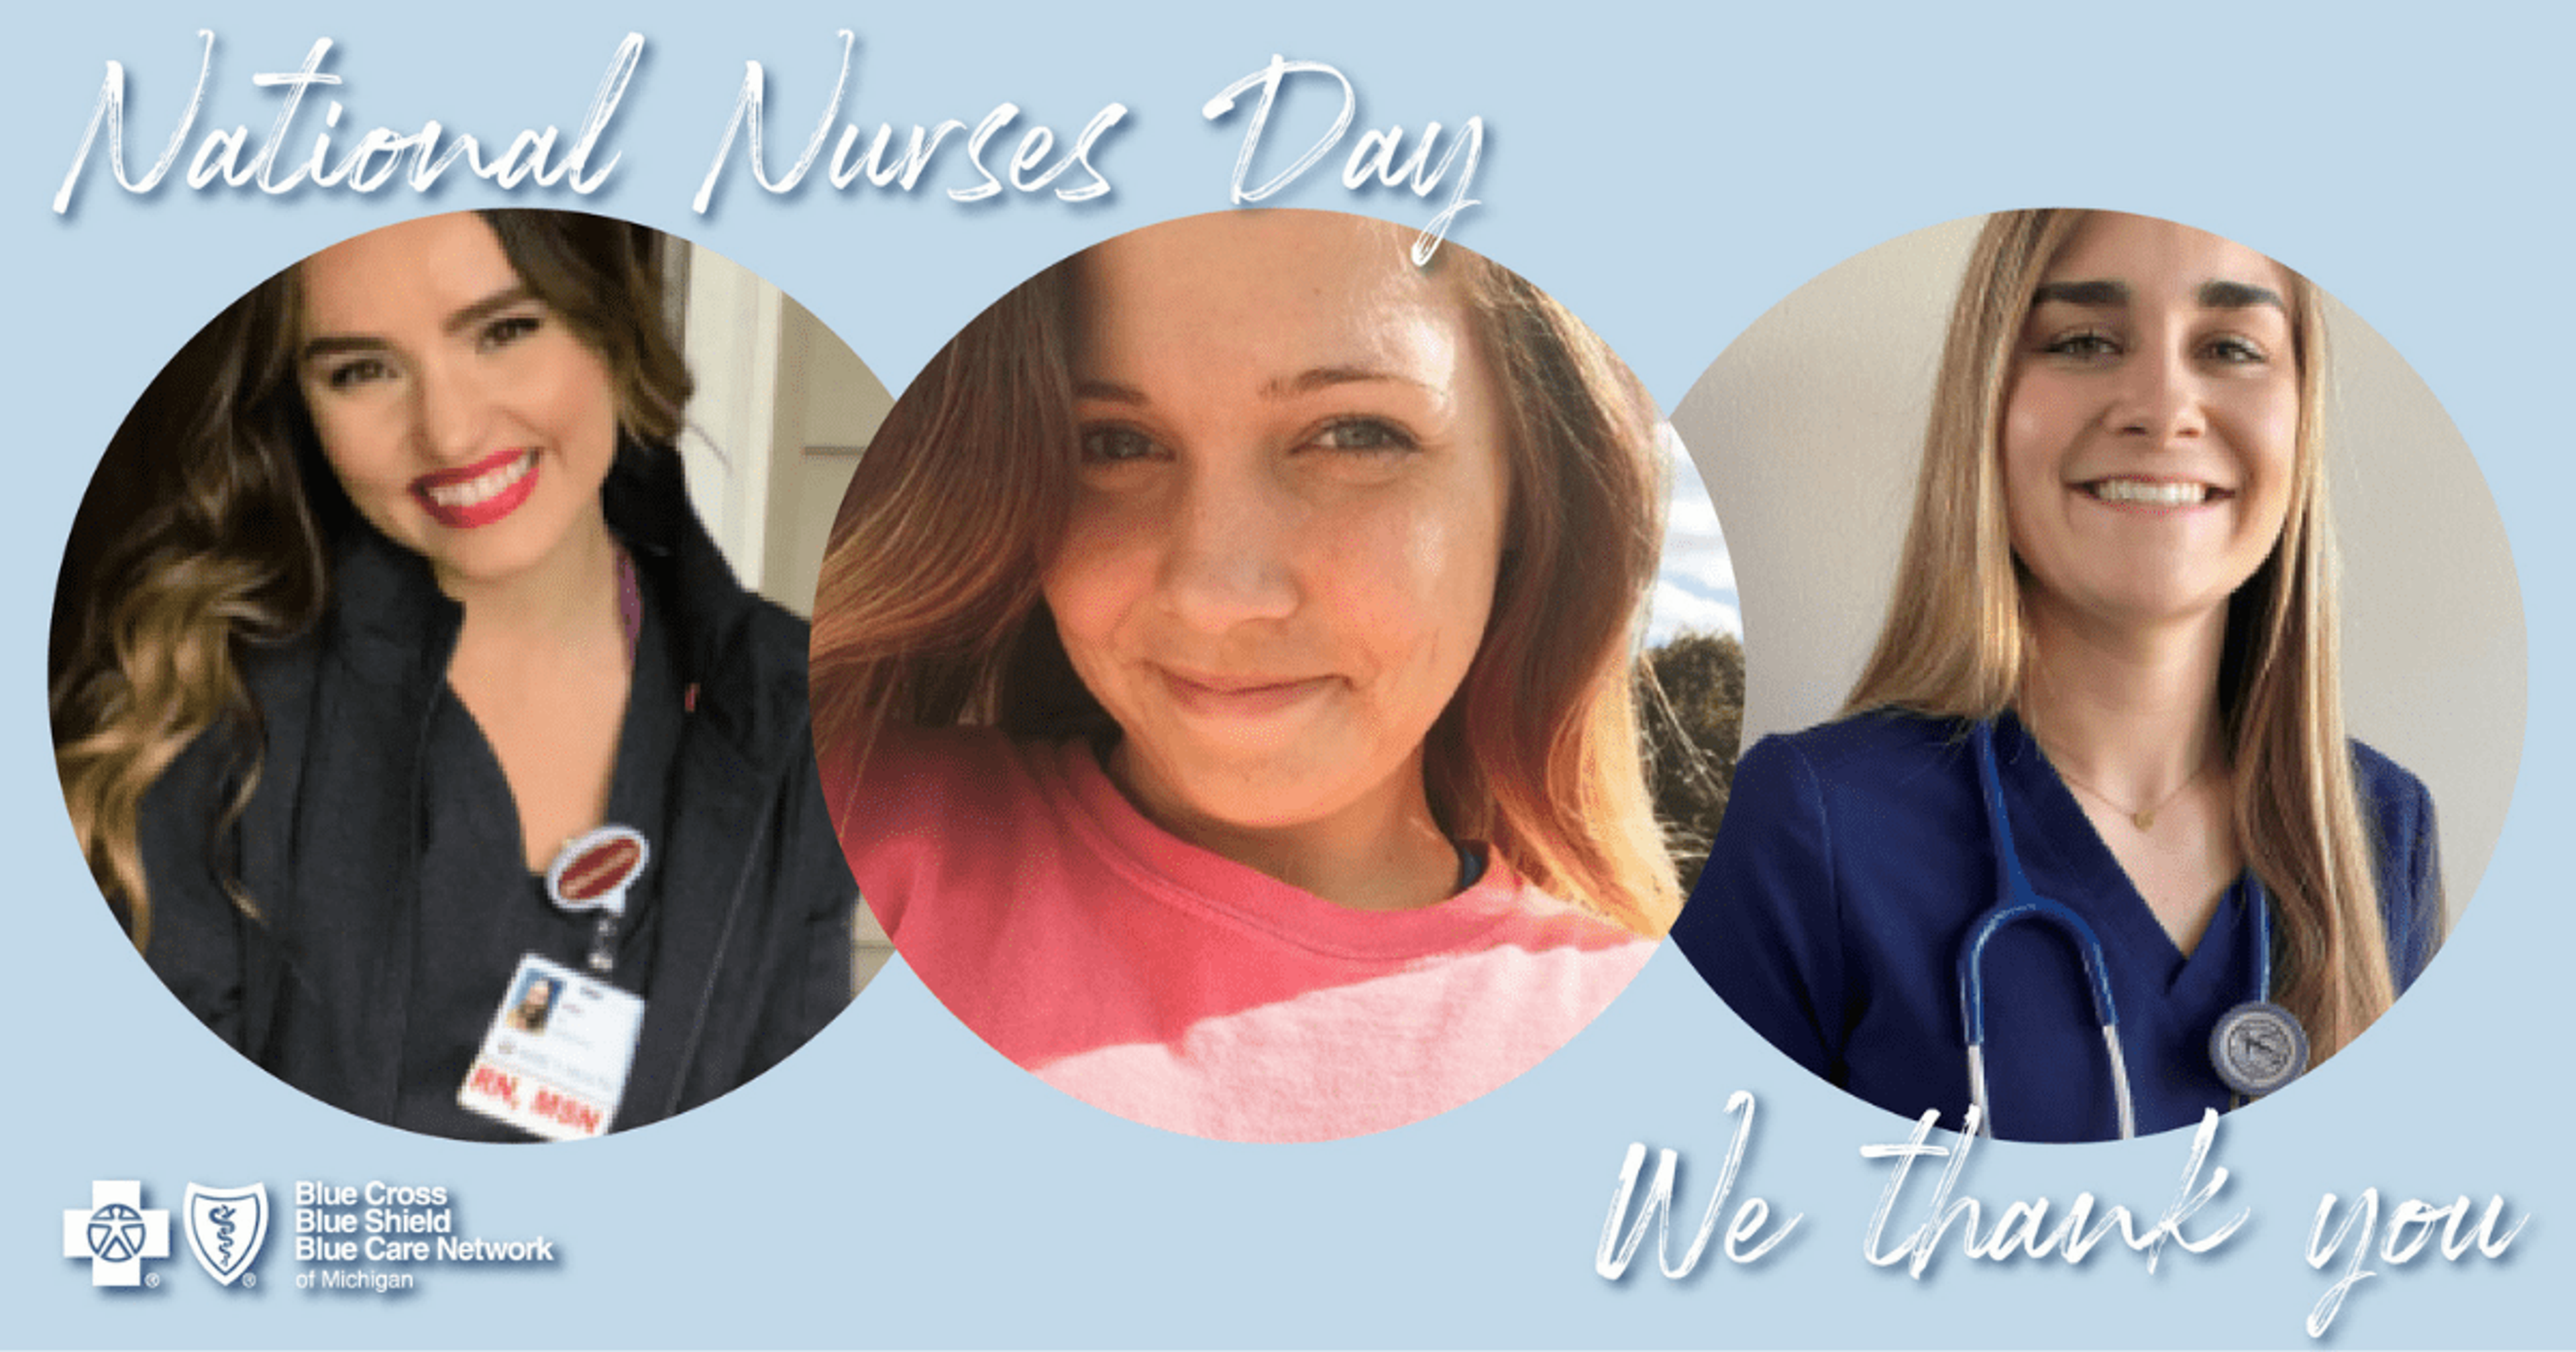 Nurses Appreciation Day May 6, 2021 features three new nurses